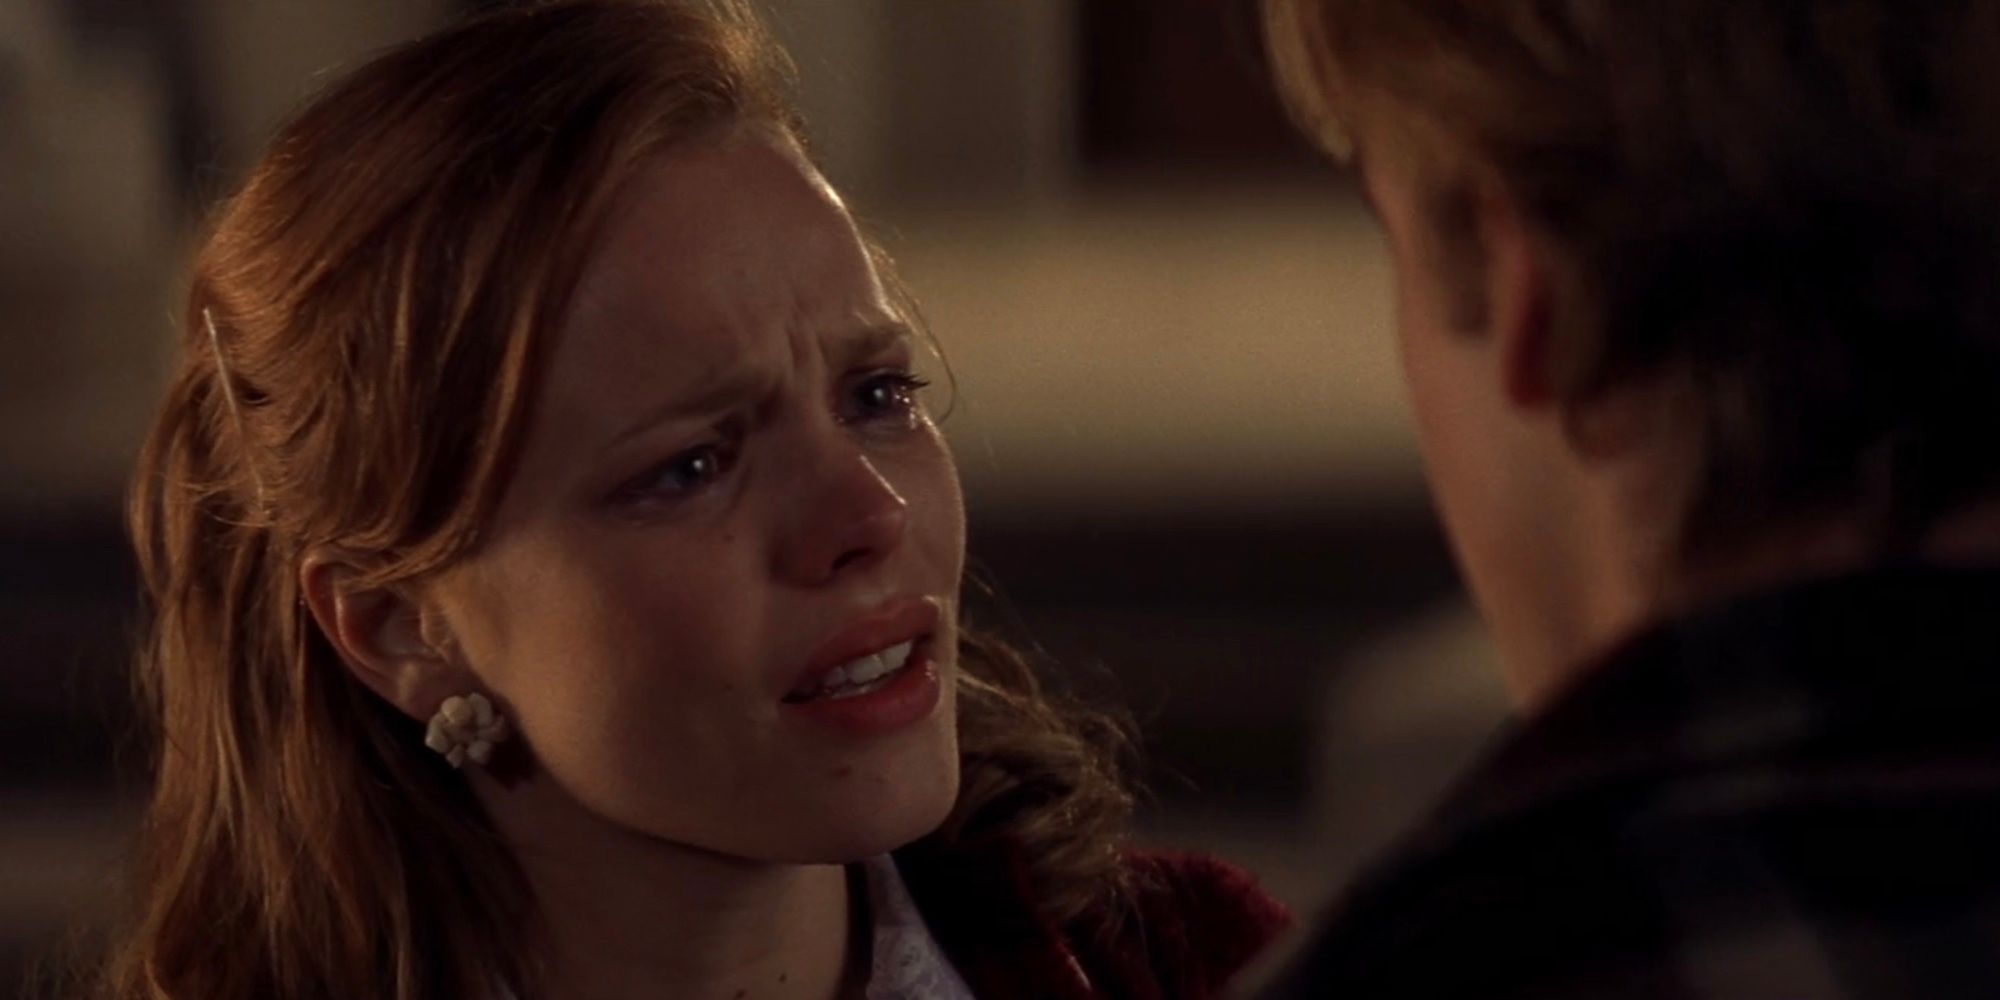 Rachel McAdams as Allie and Ryan Gosling as Noah in The Notebook